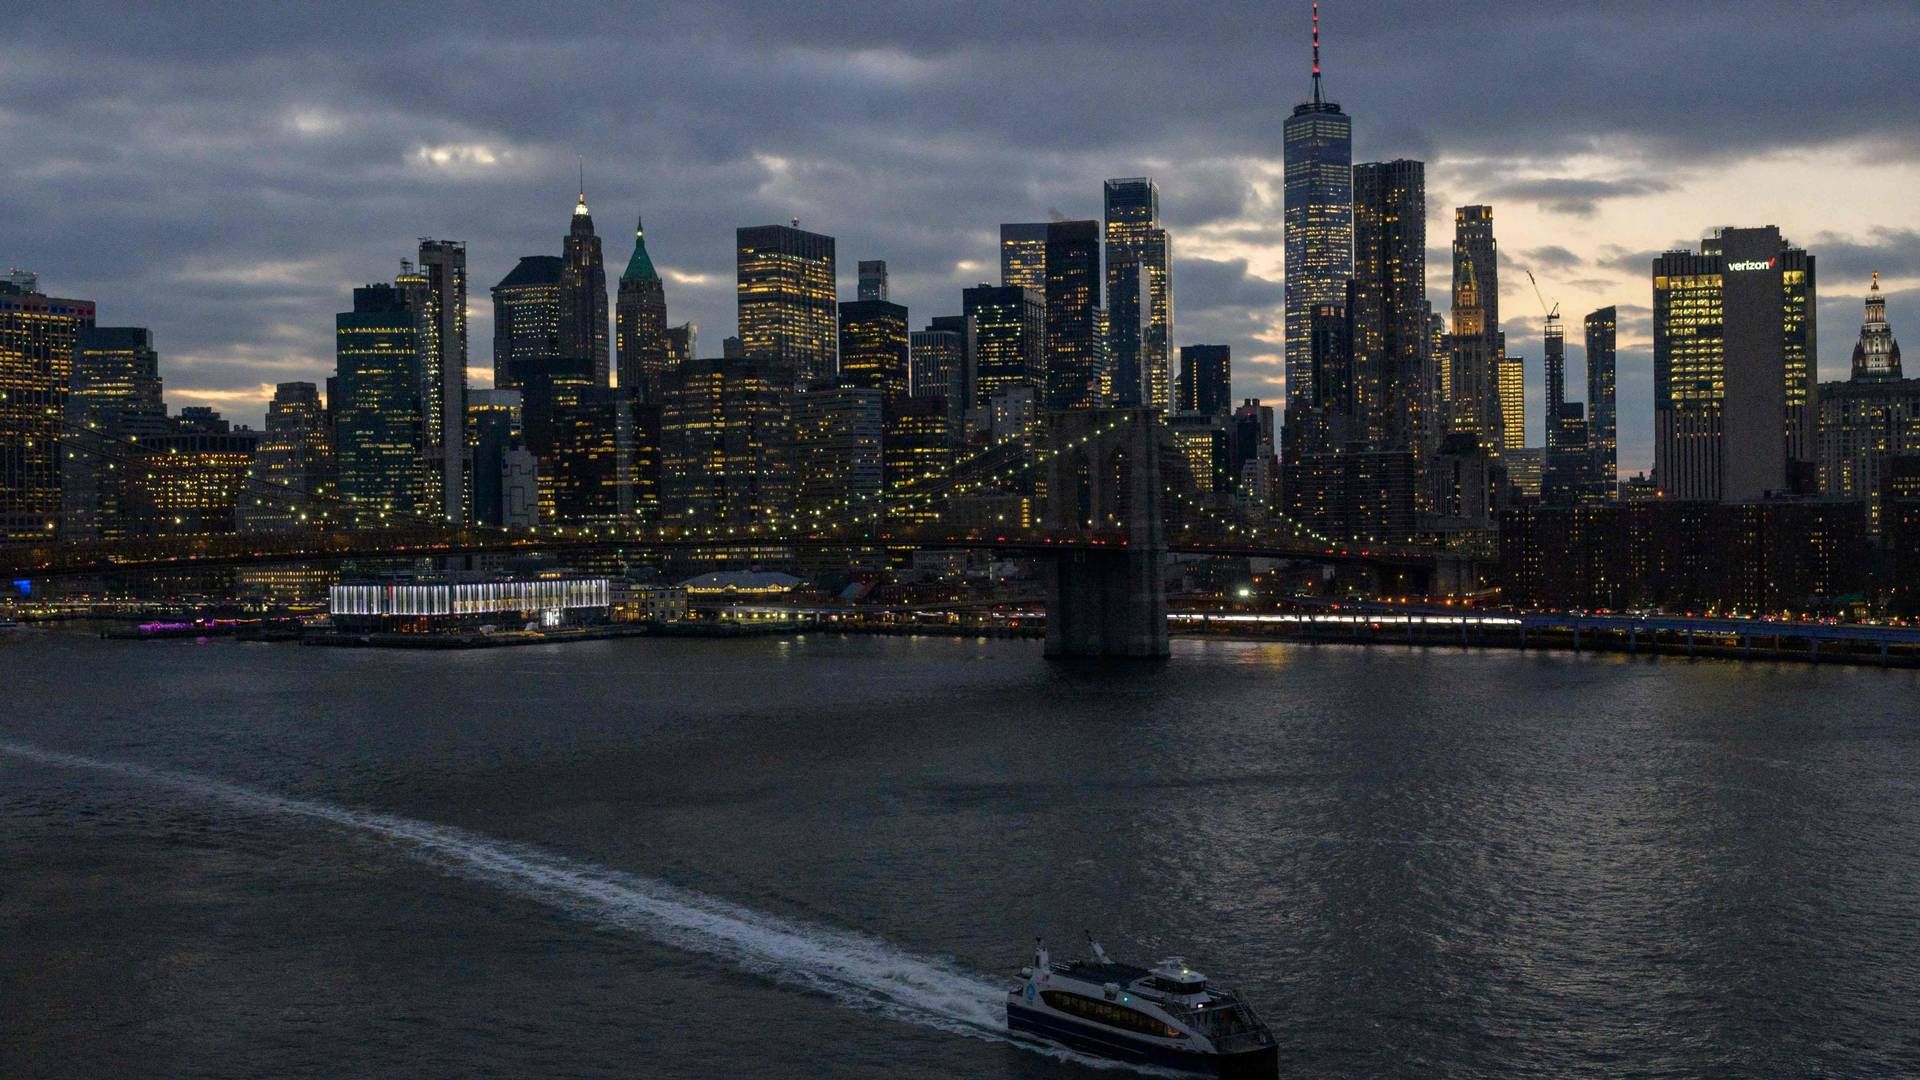 I 2022 blev der investeret flere penge i retssager i USA, viser ny rapport. Her skylinen i New York. | Foto: Angela Weiss